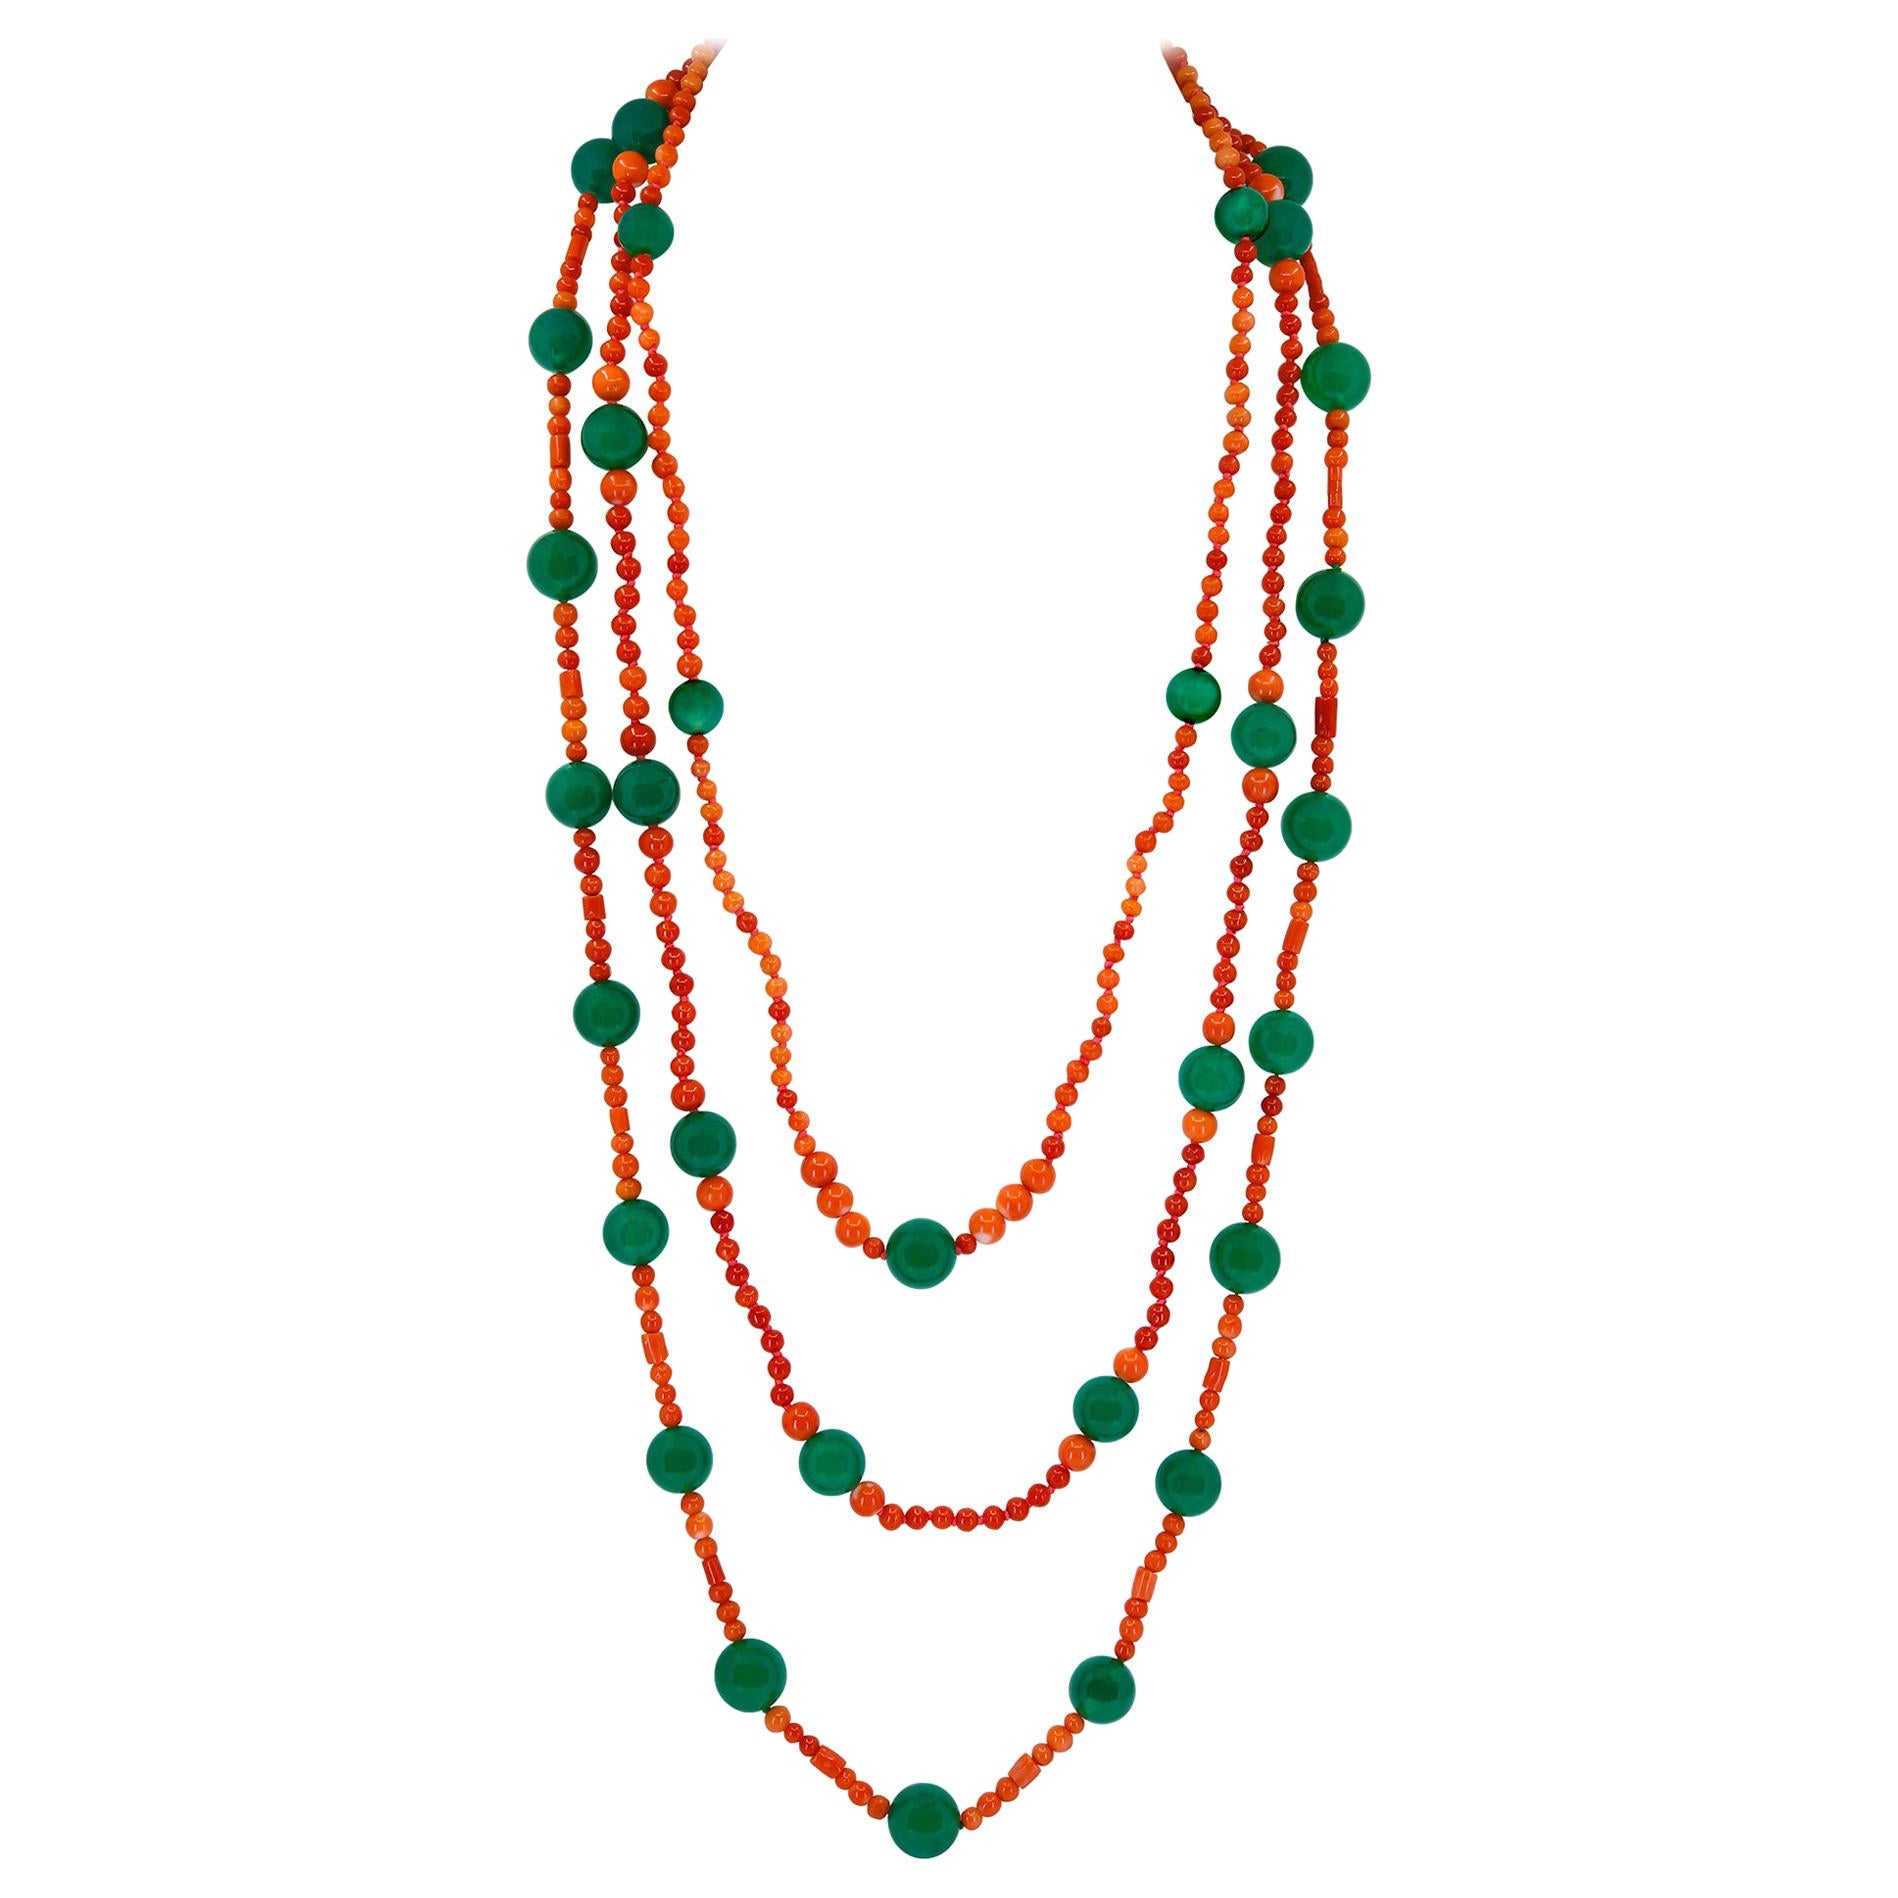 Collier de corail rouge et onyx vert à trois rangs